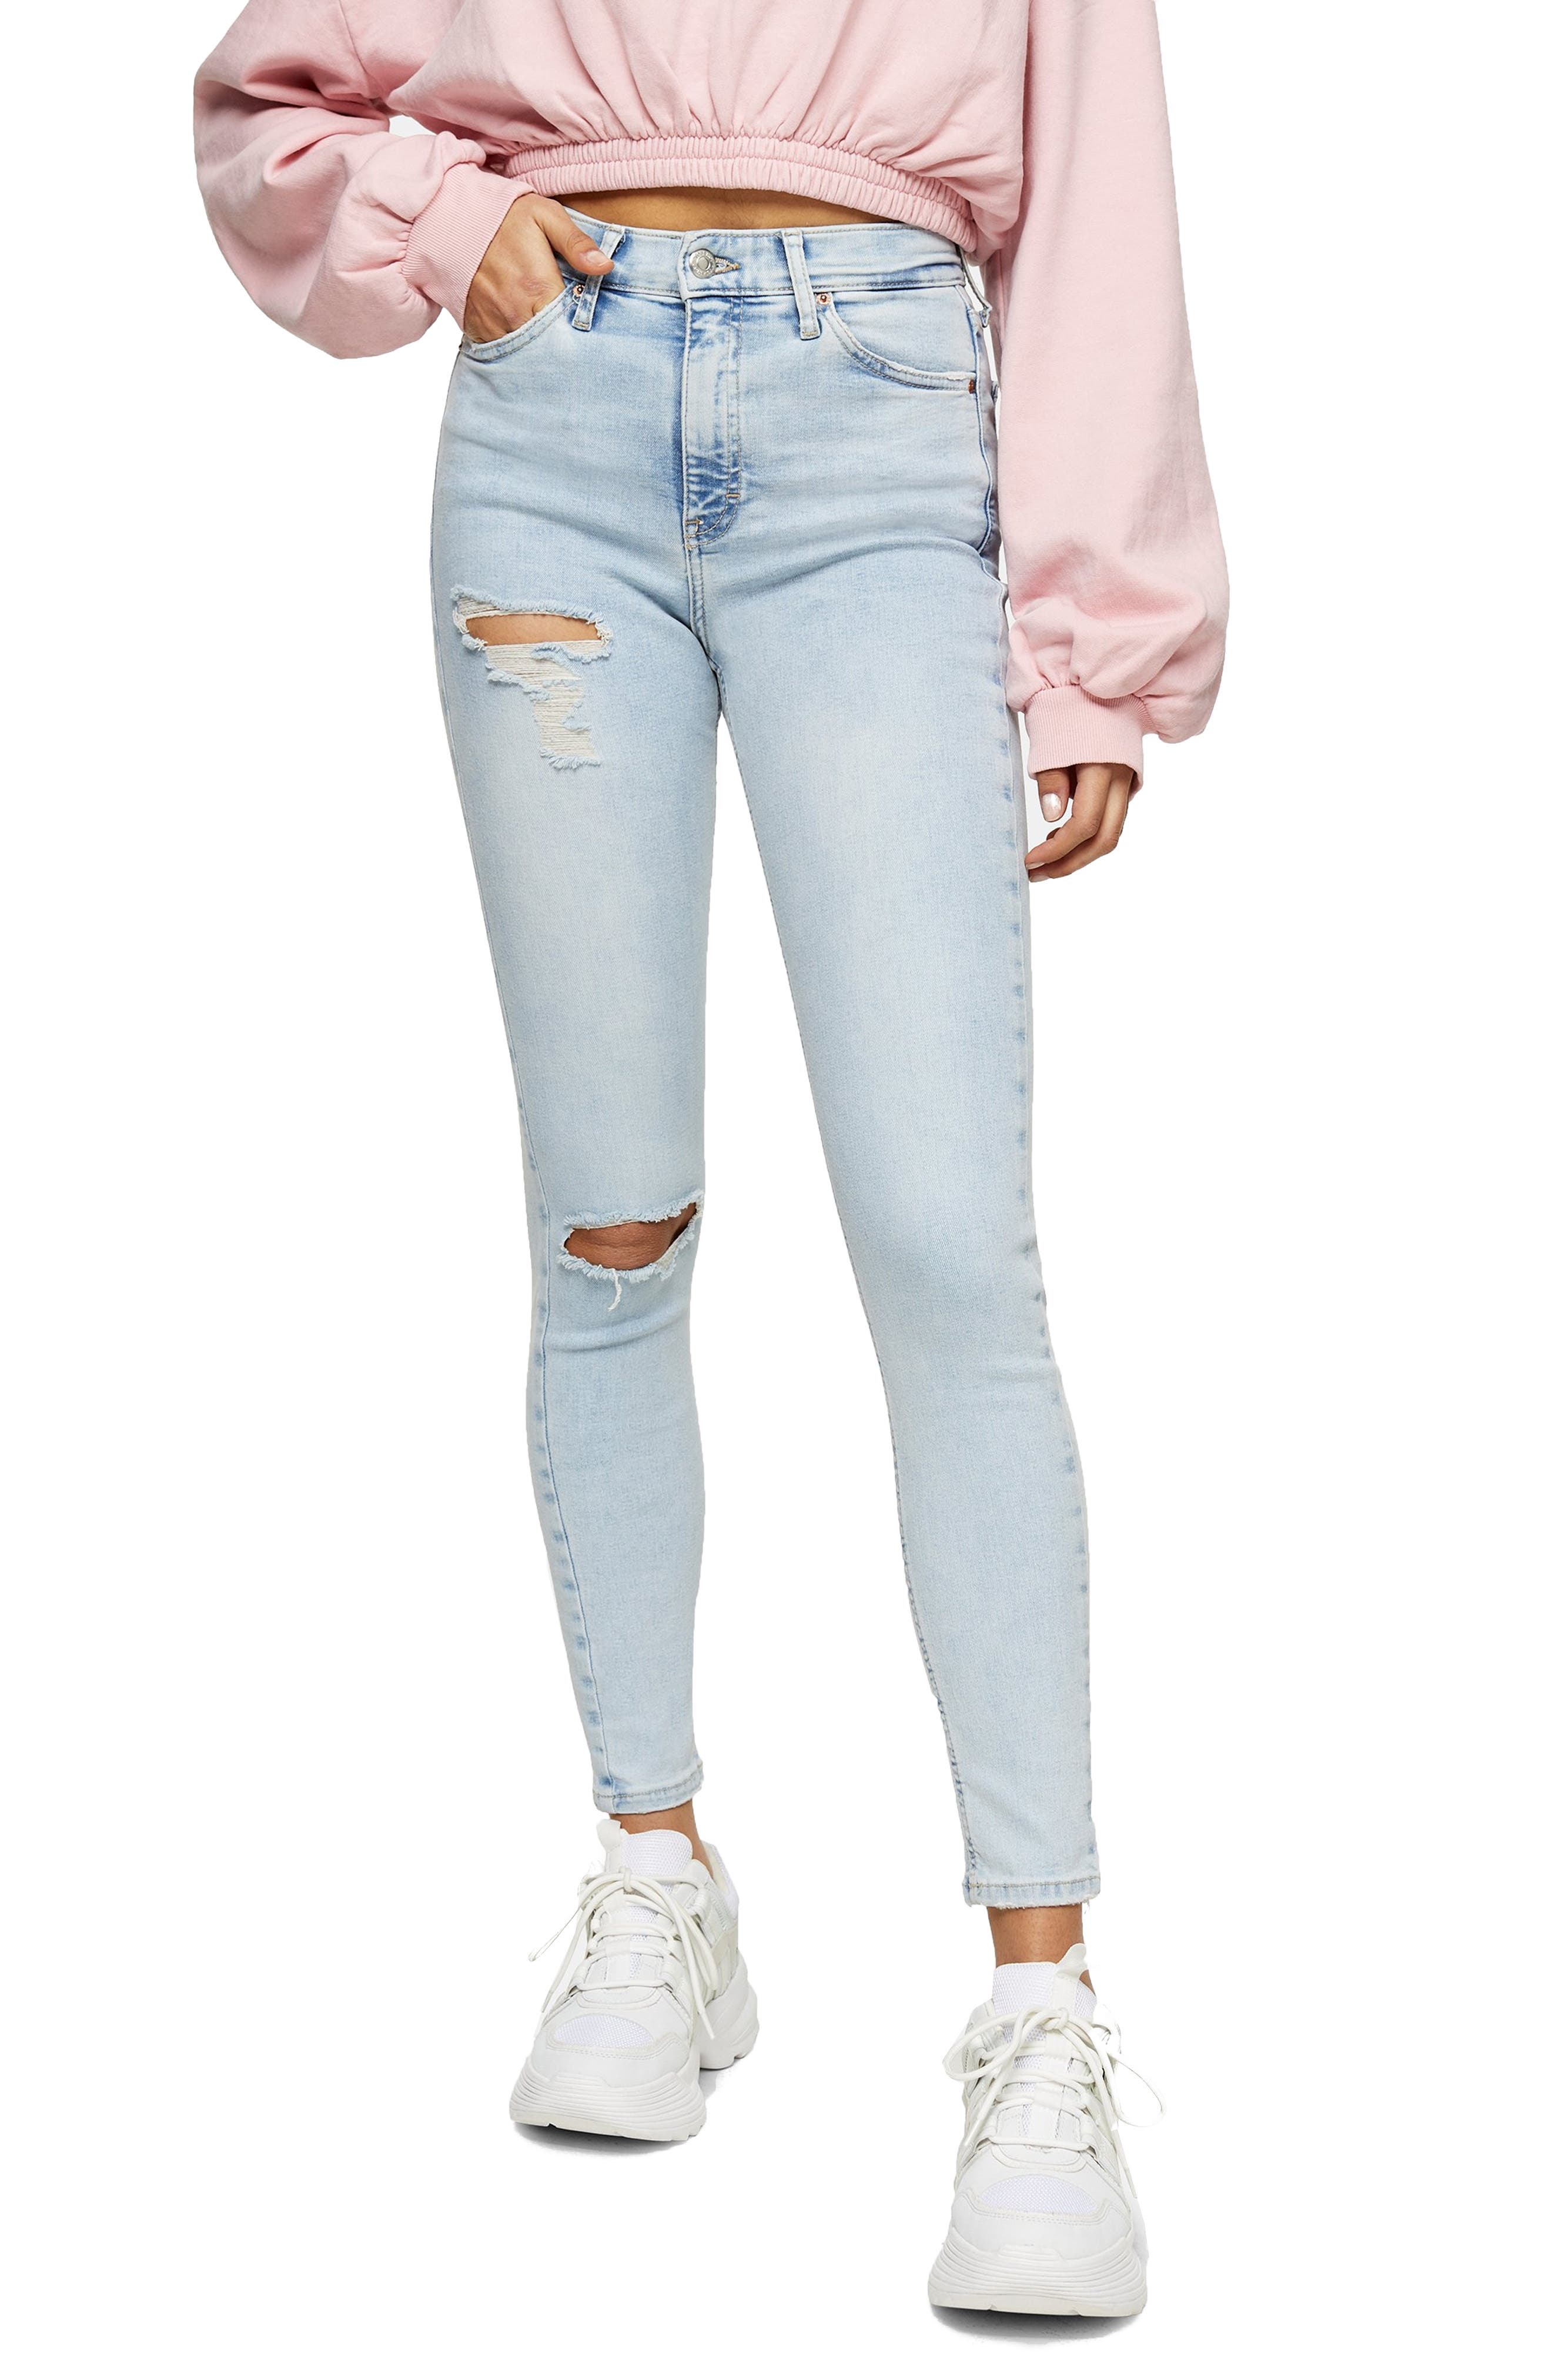 topshop jeans sale